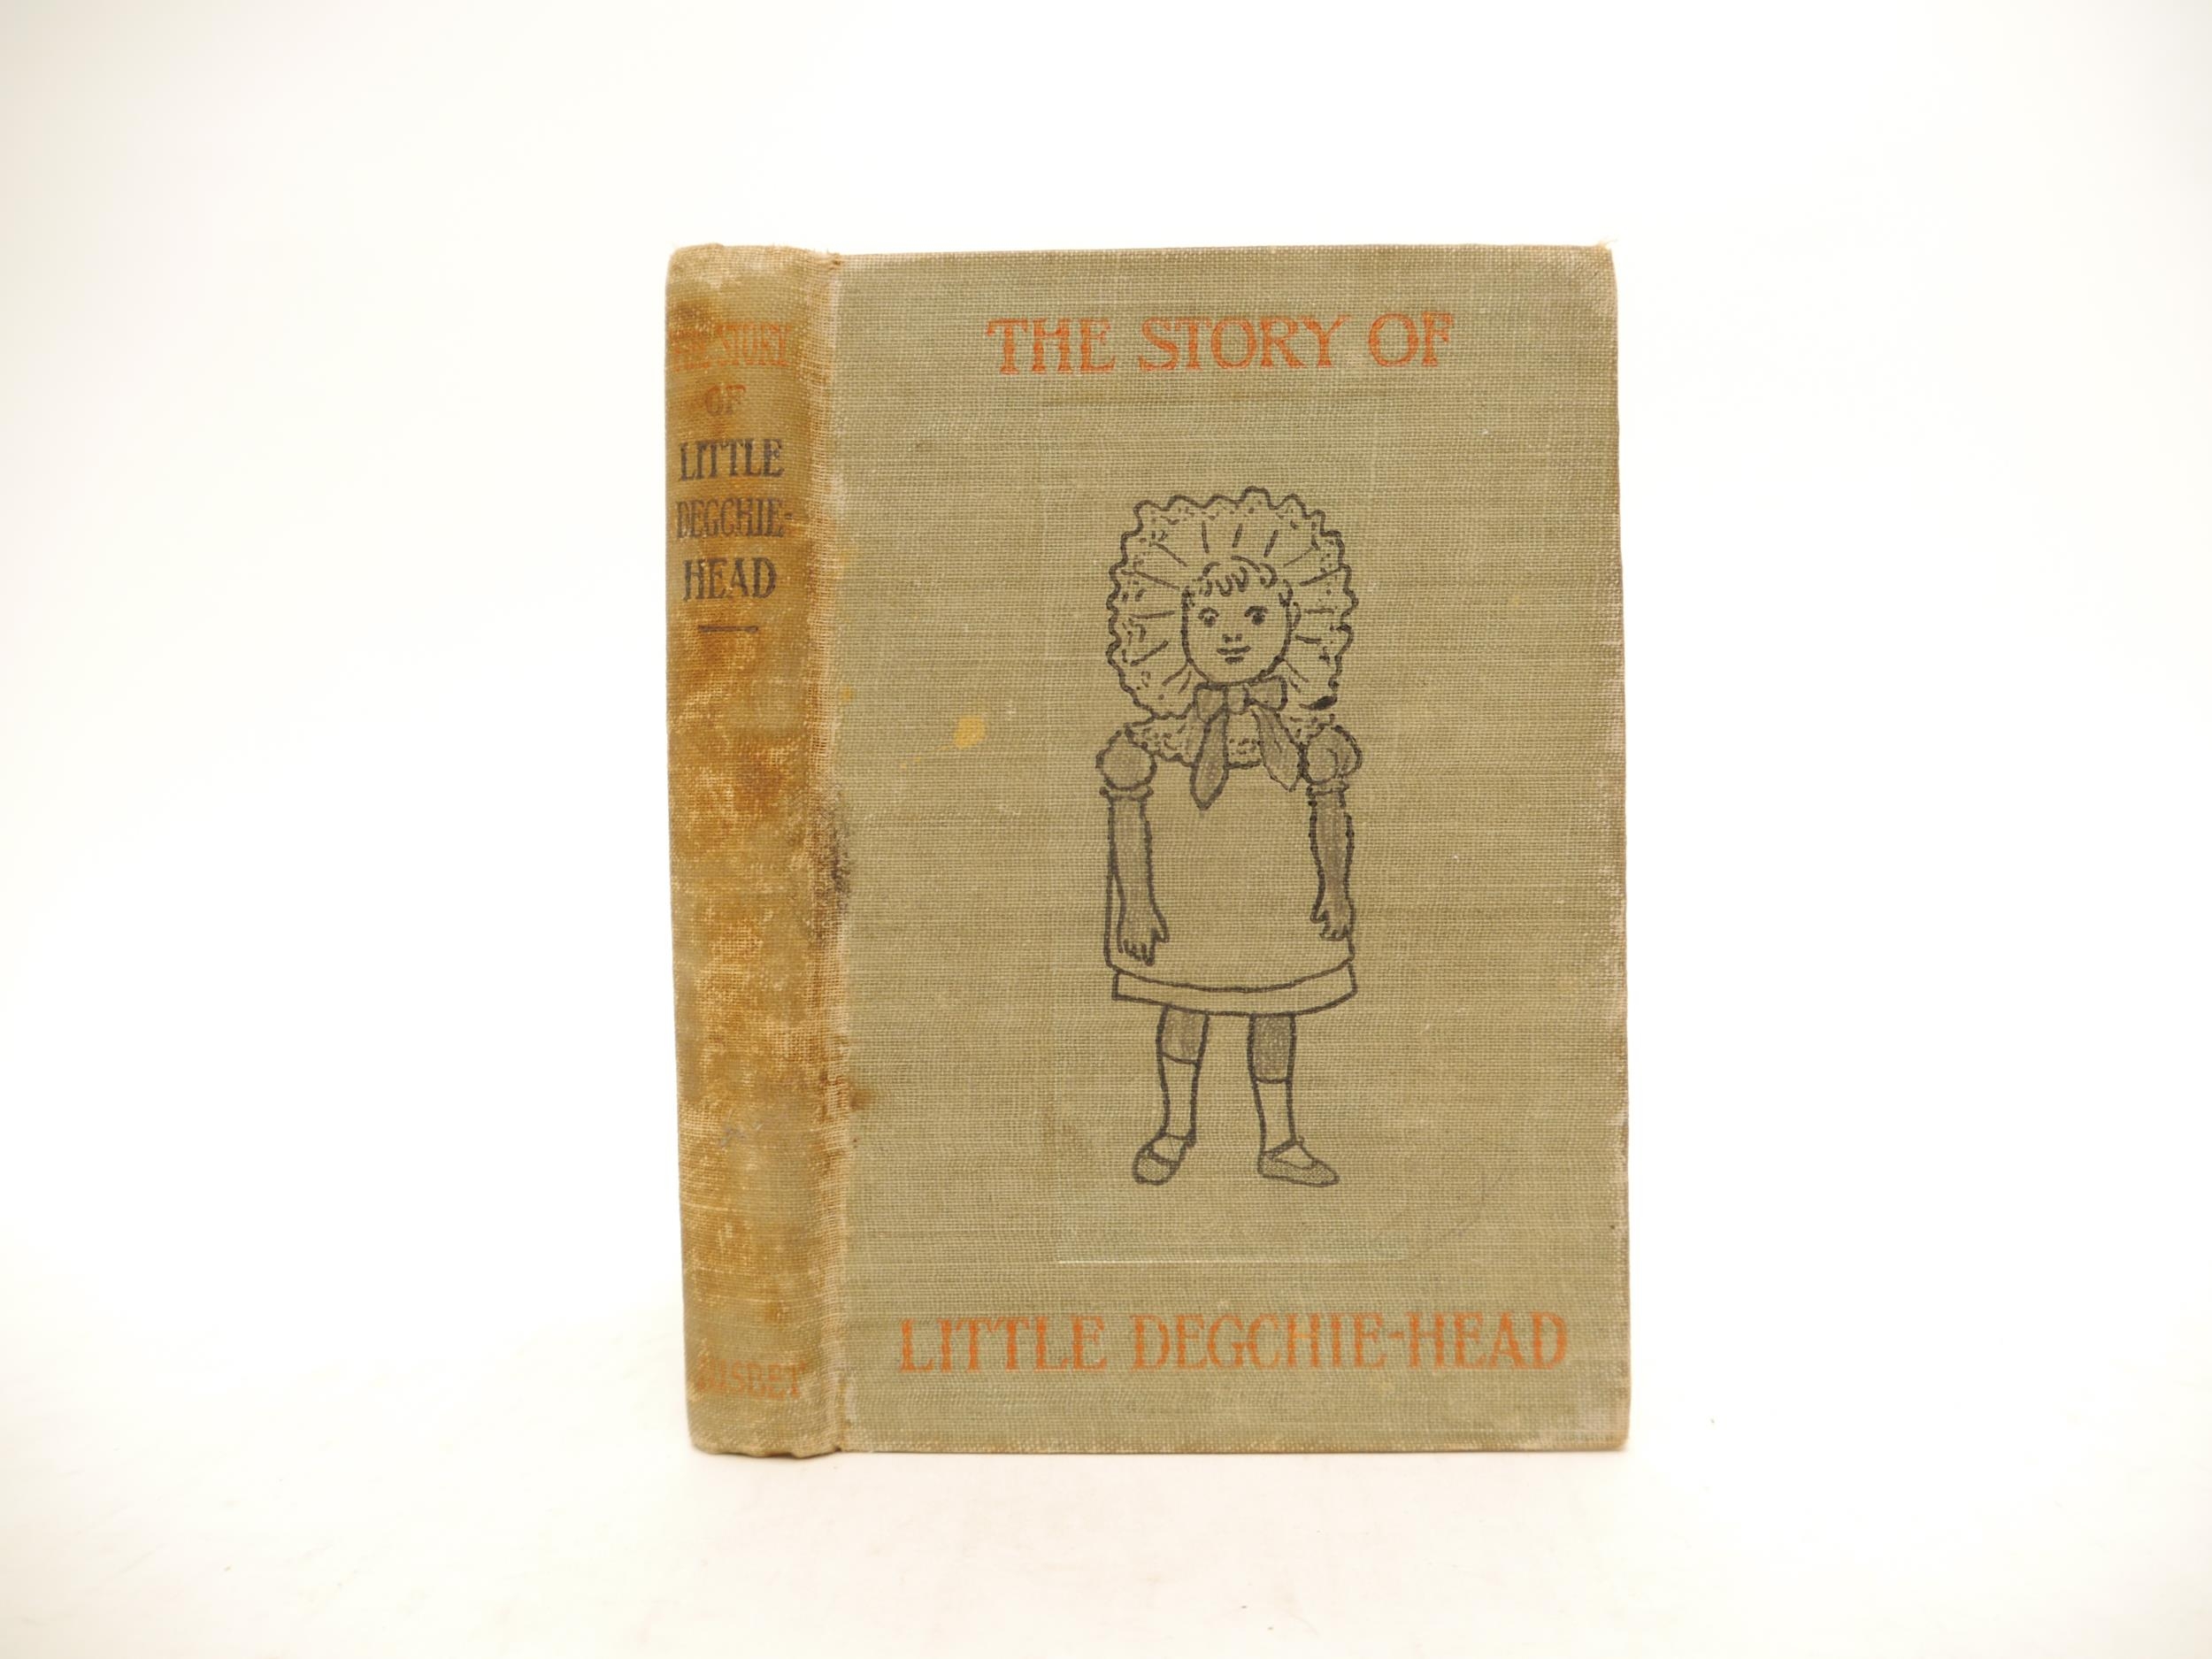 [Helen Bannerman]: 'The Story of Little Degchie-head', London, James Nisbet & Co., 1903, 1st